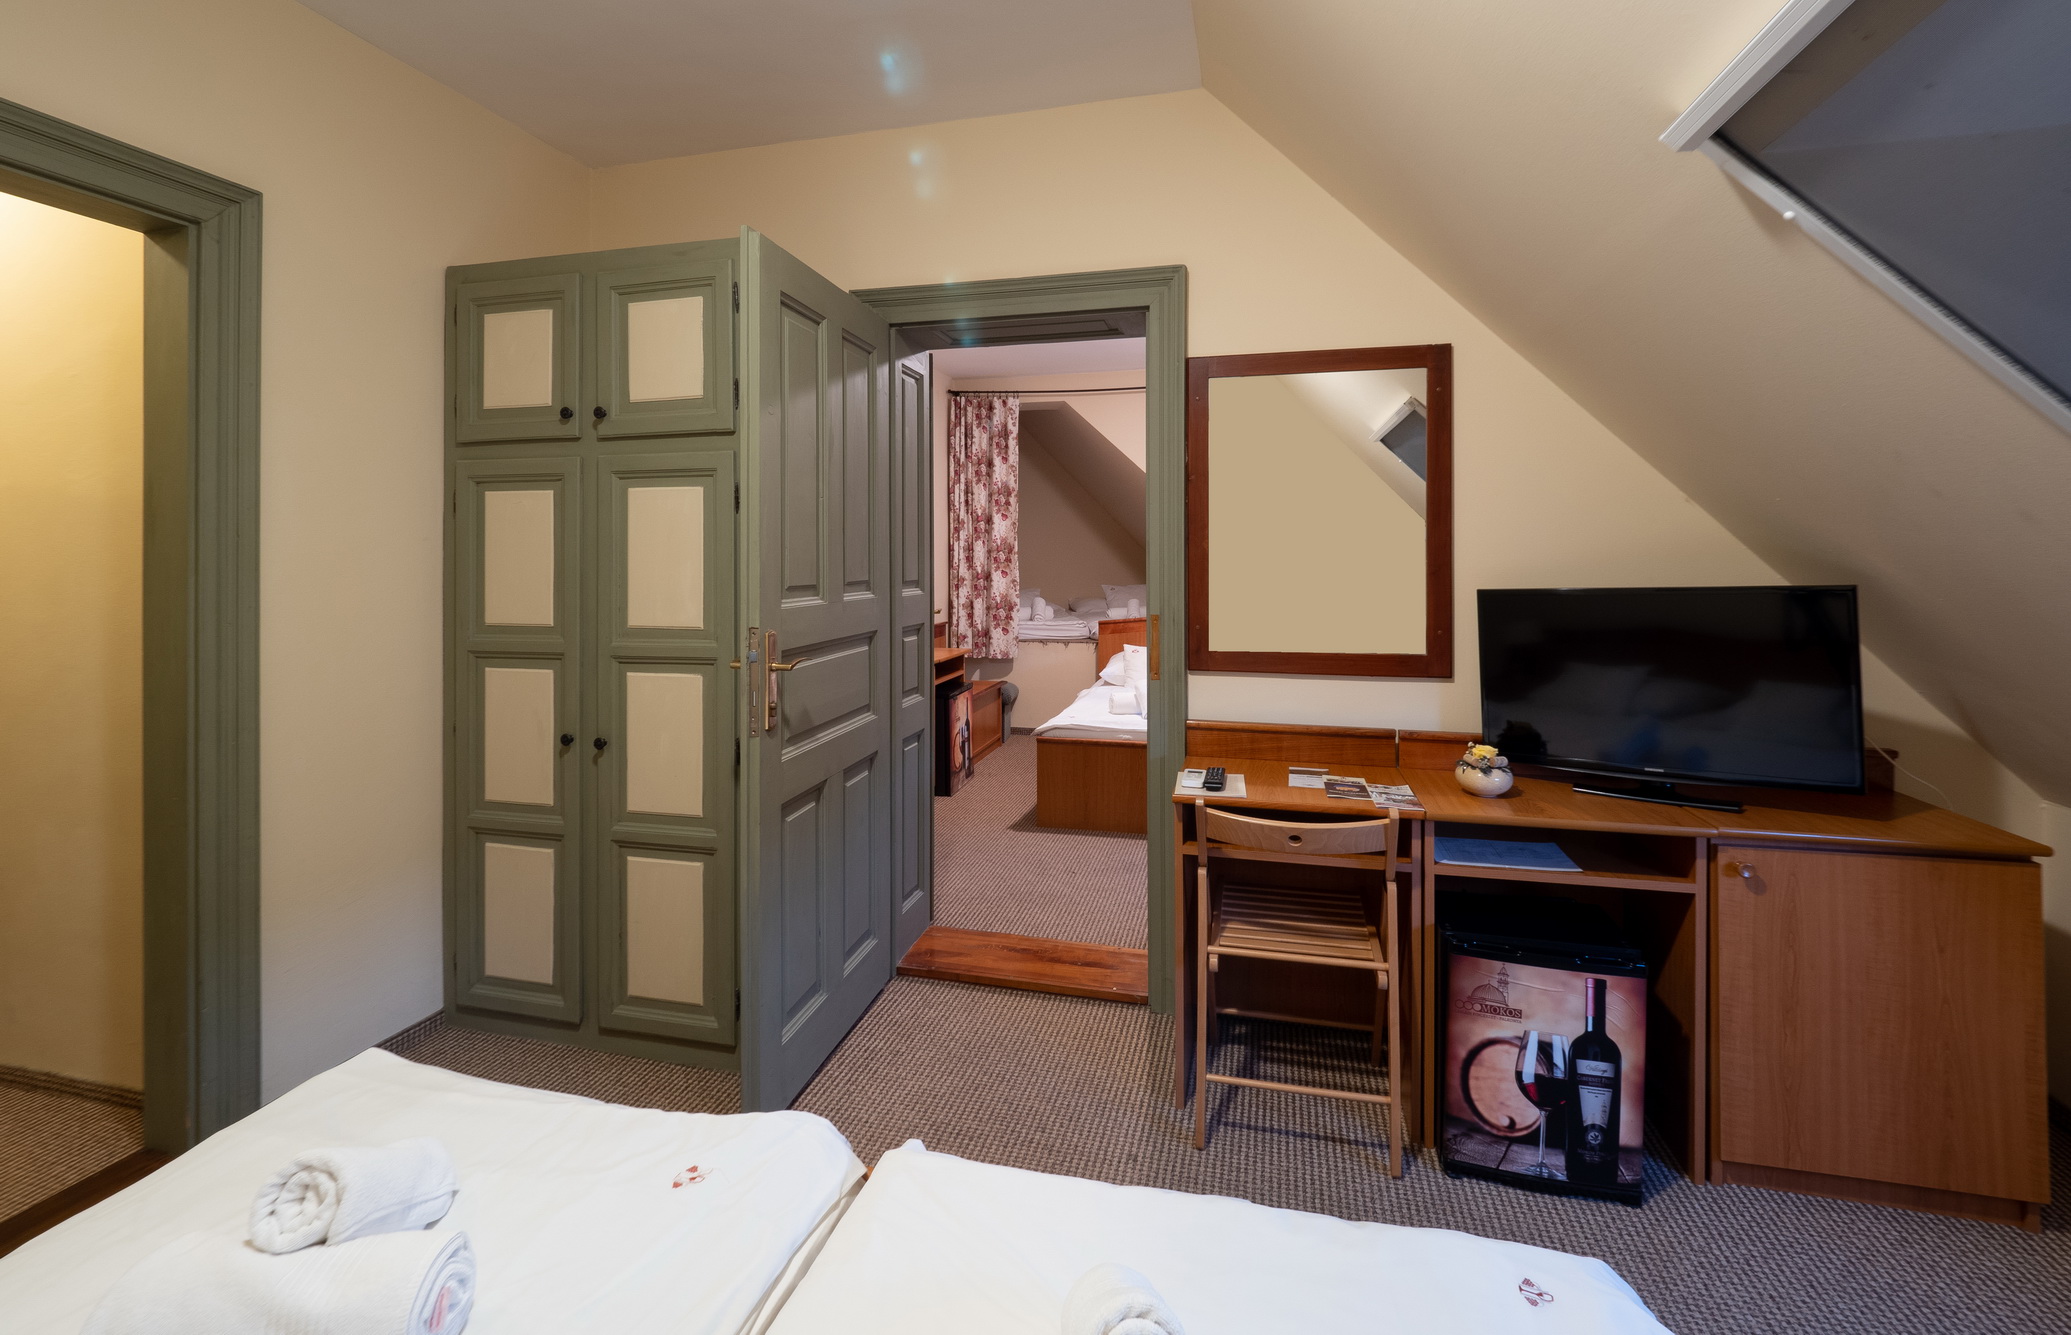 A Hotel Cabernet családi kuckós szobája, a képen egy dupla ágy és egy külön ágy kis szobában, tévé, íróasztal, kis hűtő